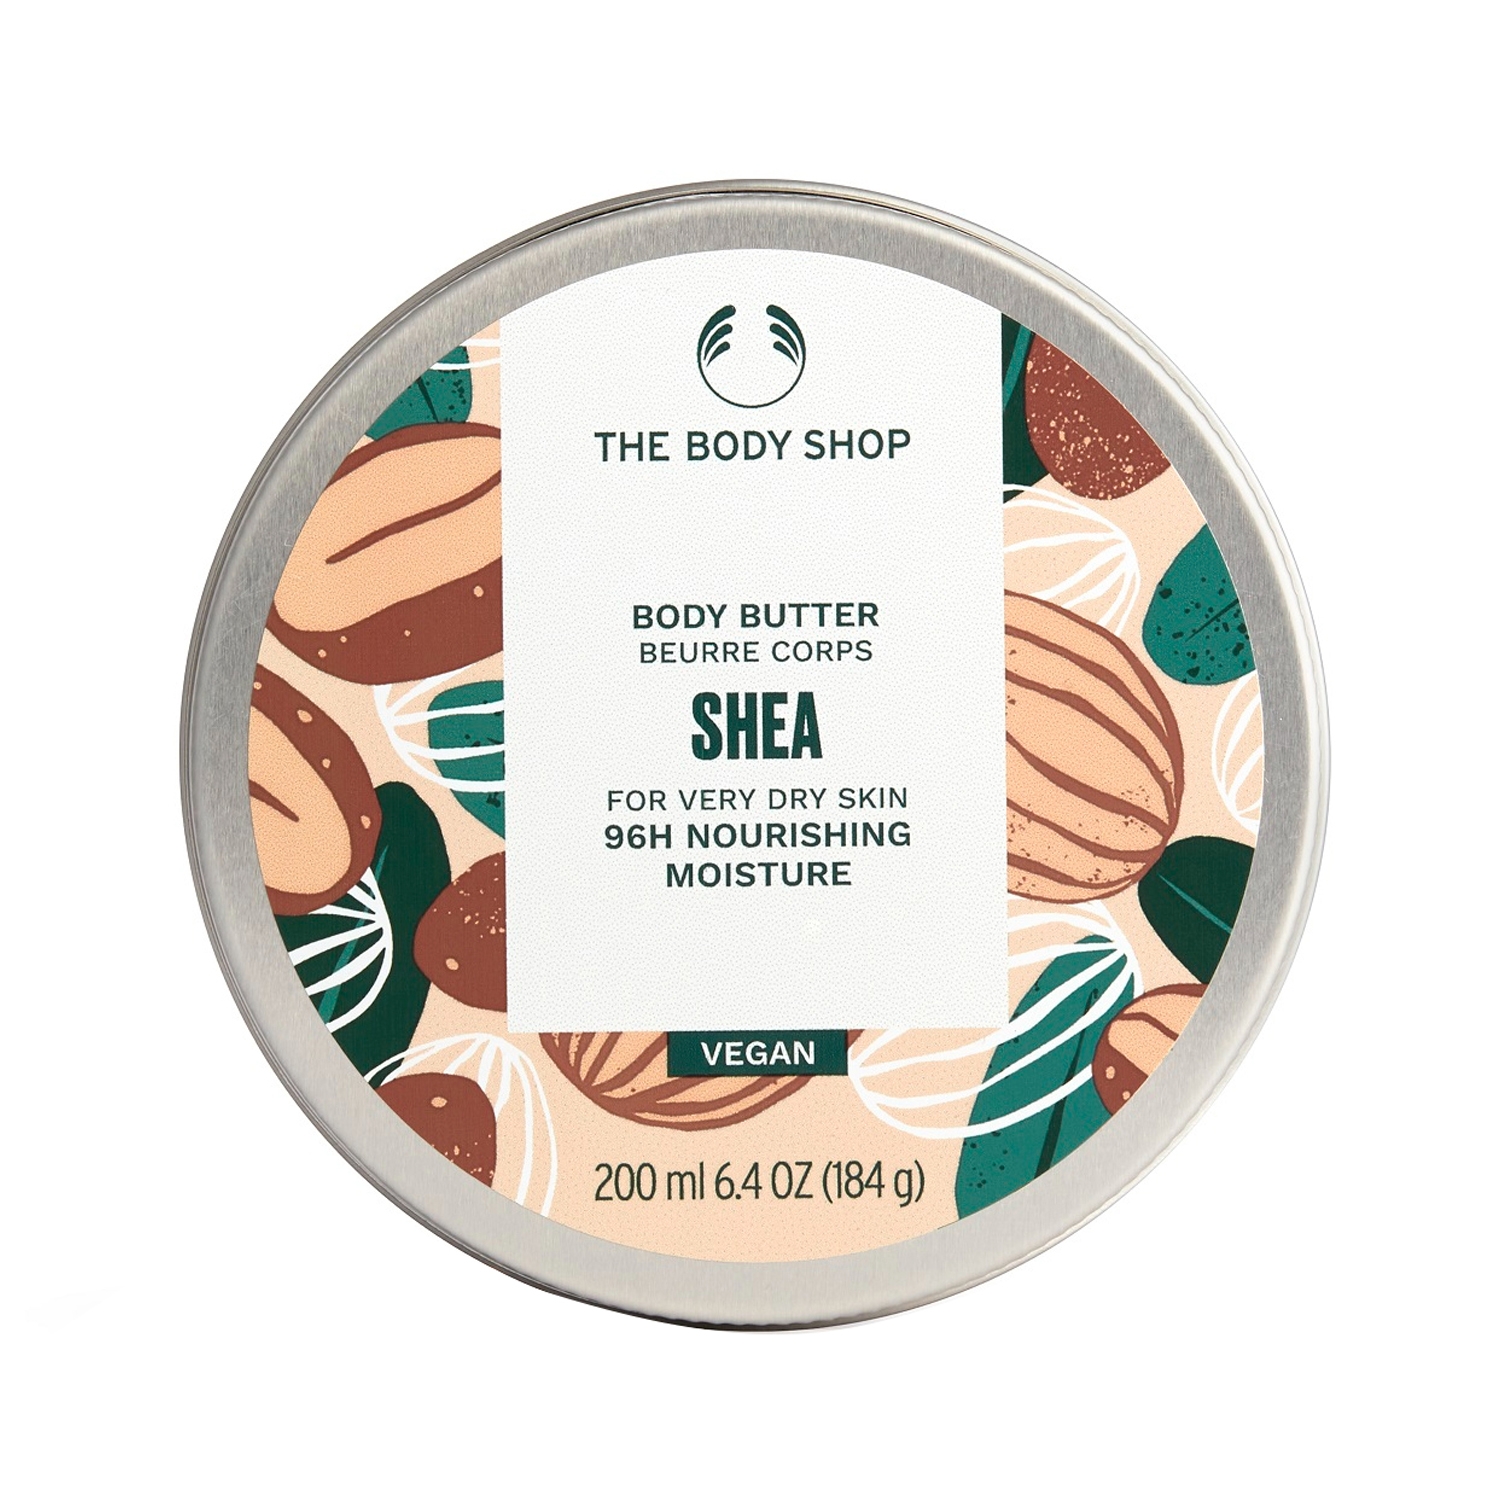 The Body Shop | The Body Shop Shea Body Butter (200ml)